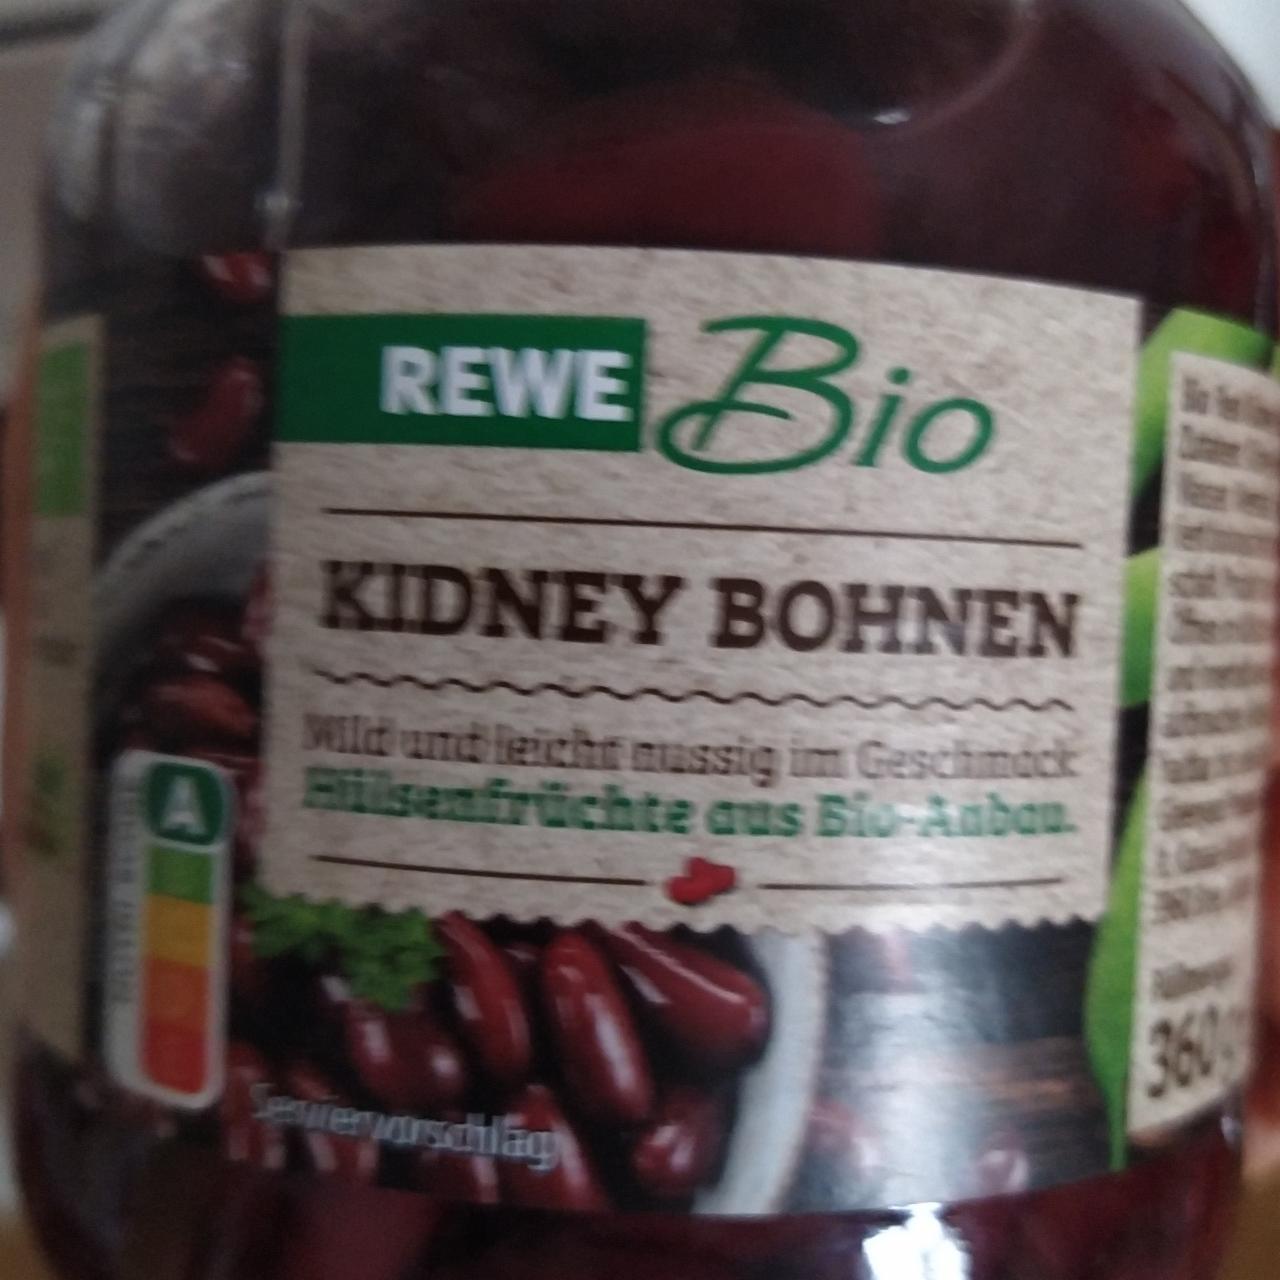 Fotografie - Kidney Bohnen Rewe Bio